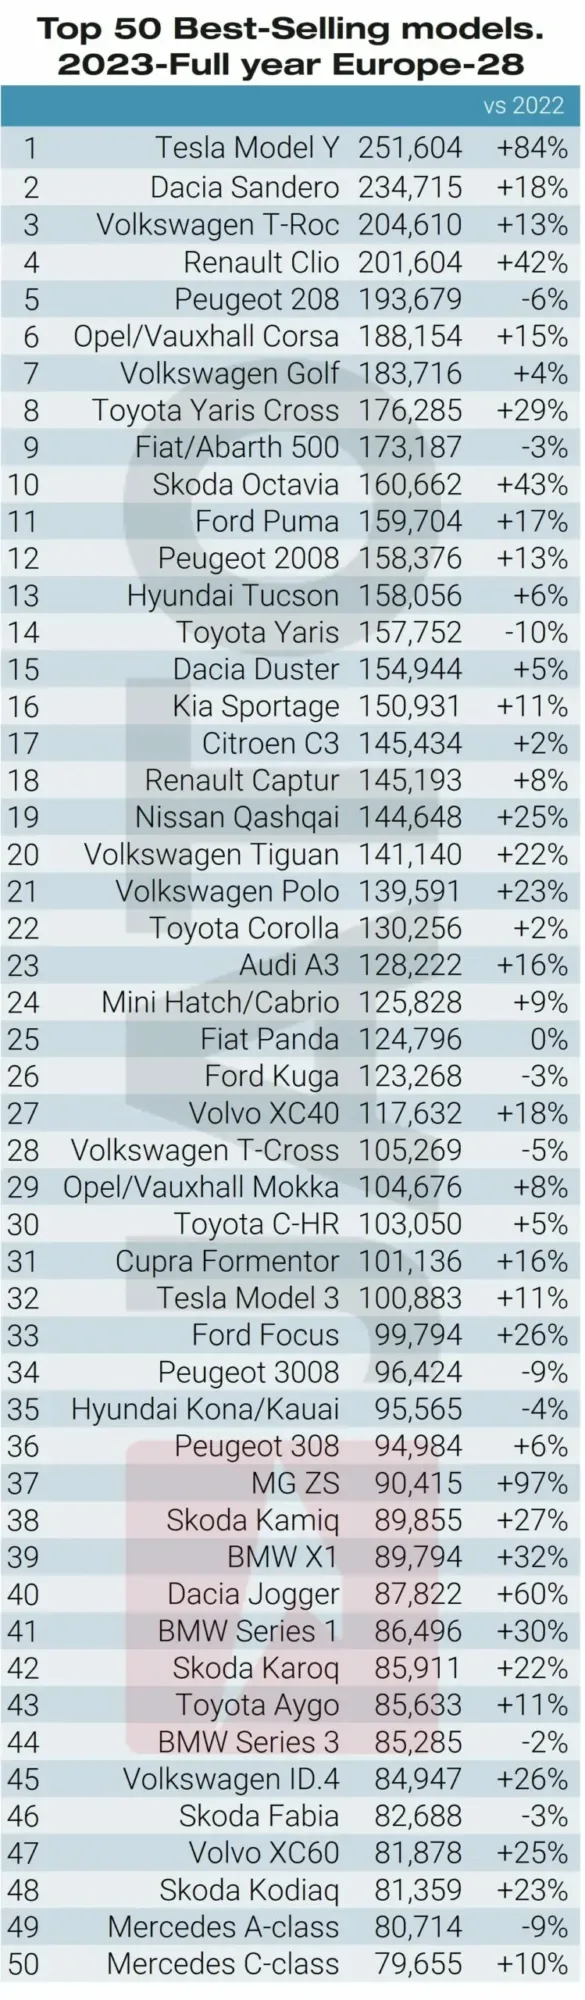 Top 50 best-selling car models in Europe in 2023